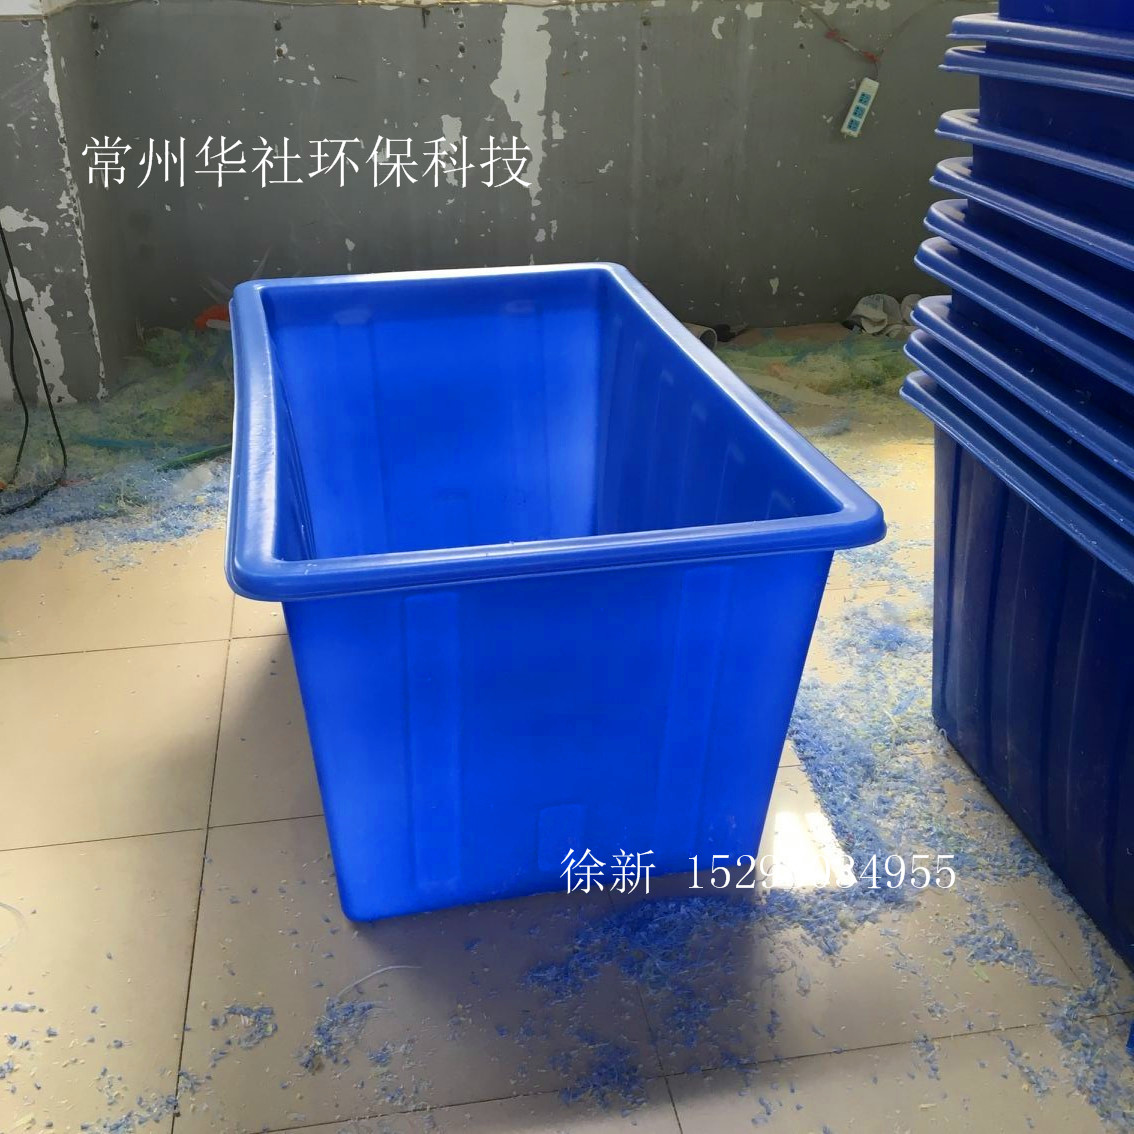 合肥水产方箱 塑料牛筋桶厂家 PE耐摔耐磨塑料箱